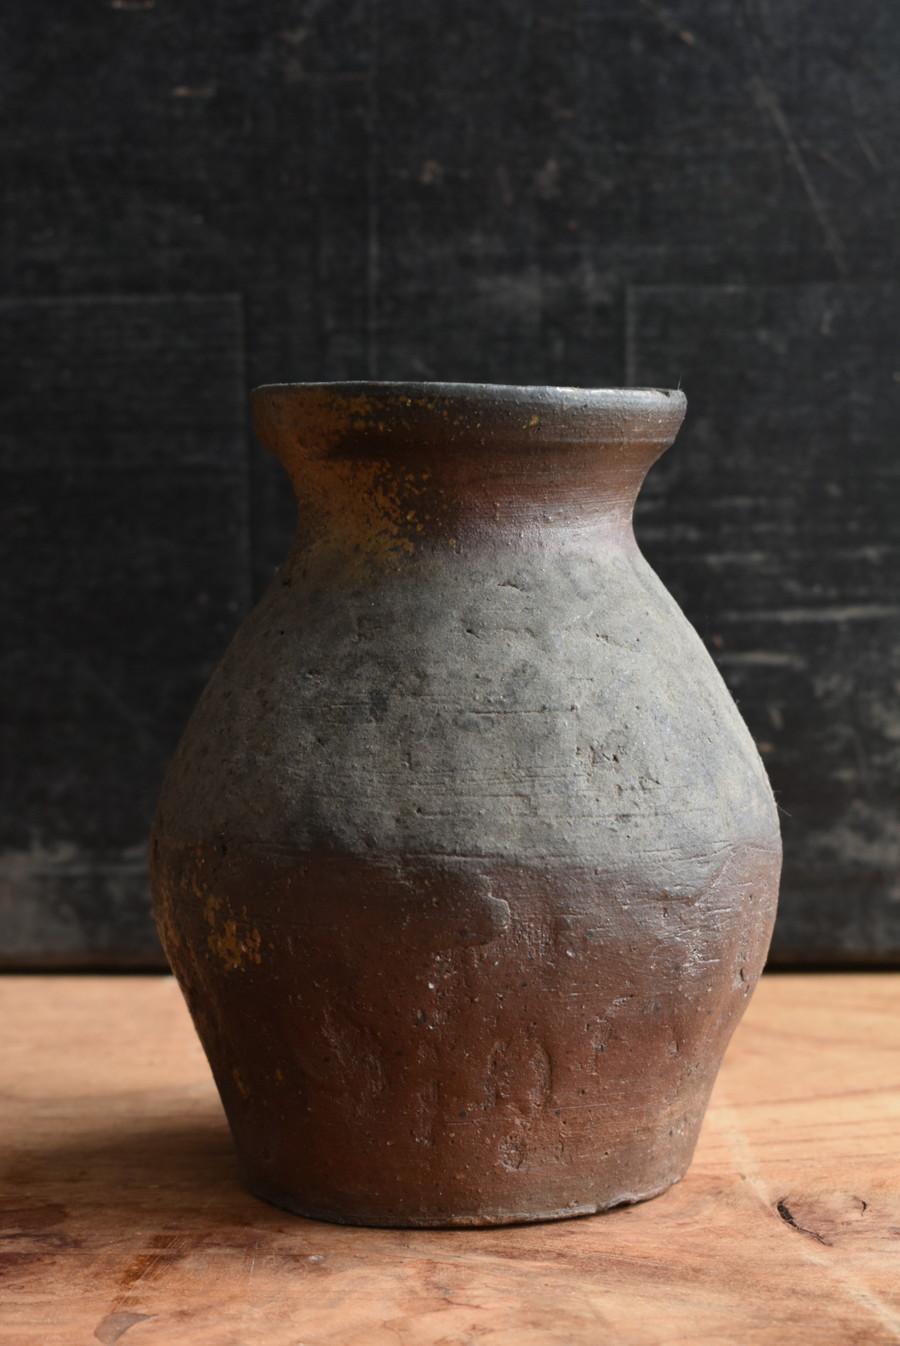 Il s'agit d'un pot japonais en céramique Echizen.
C'est 